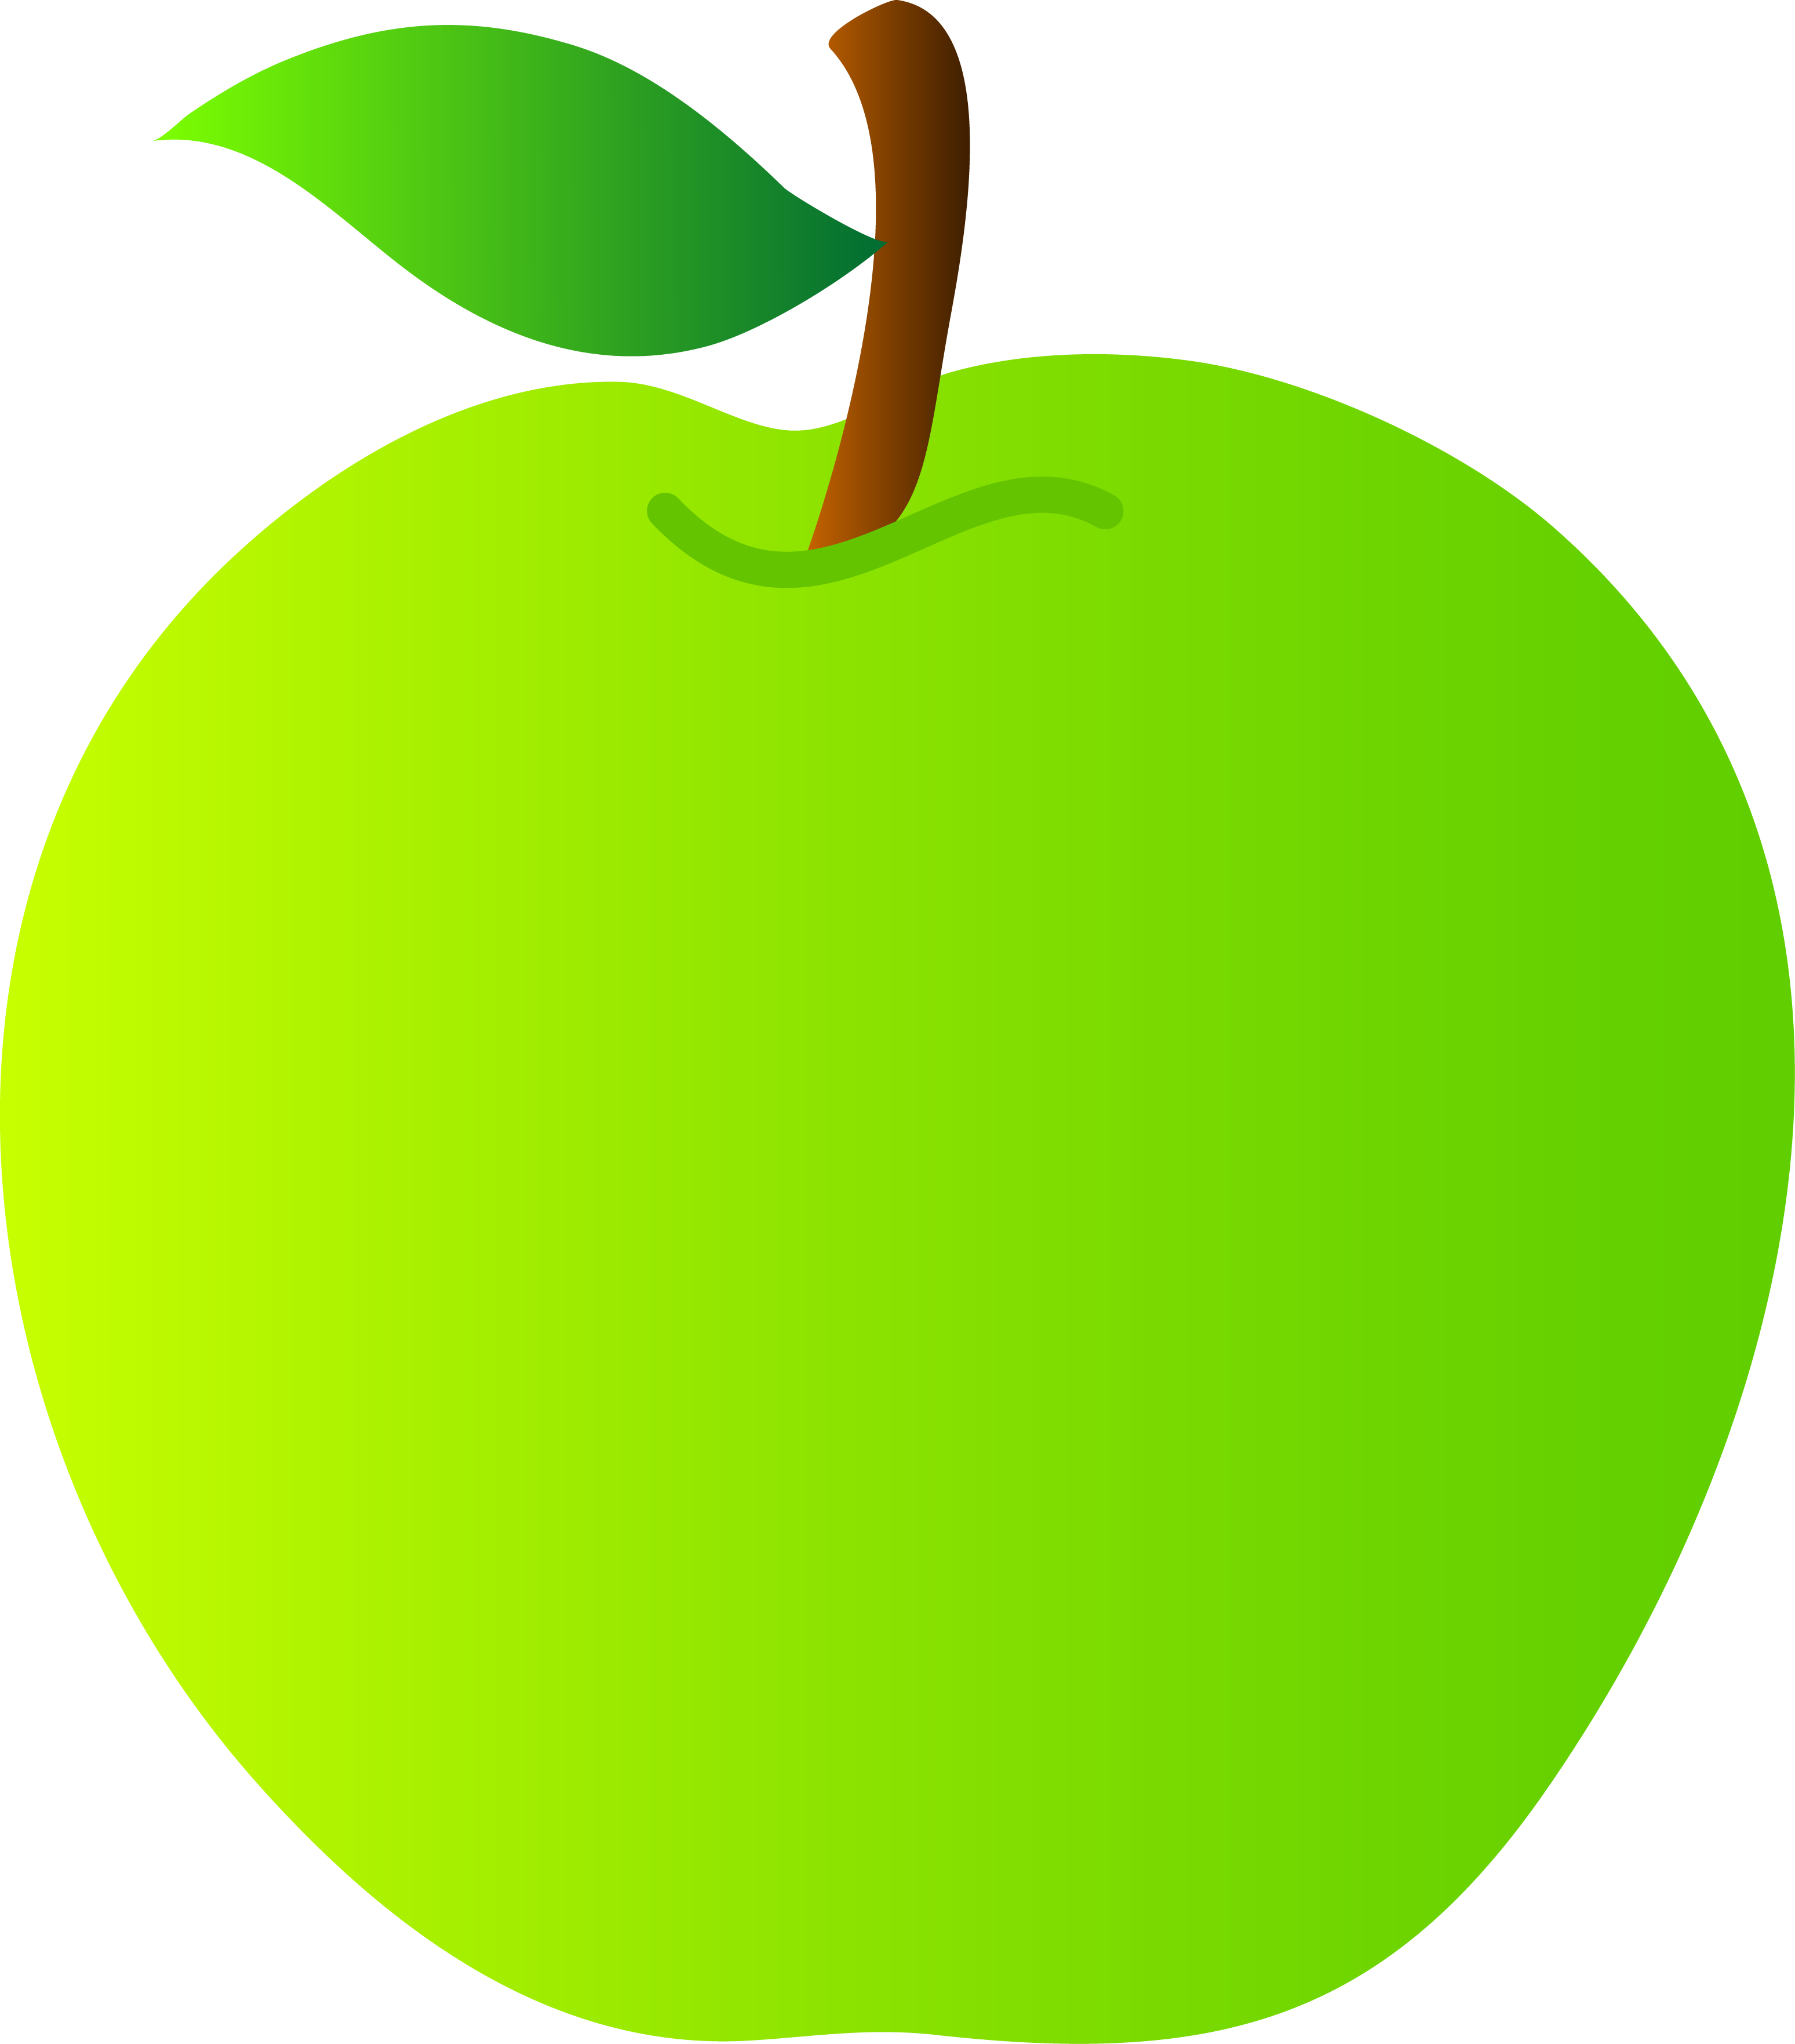 Lungs clipart carton. Green apple 